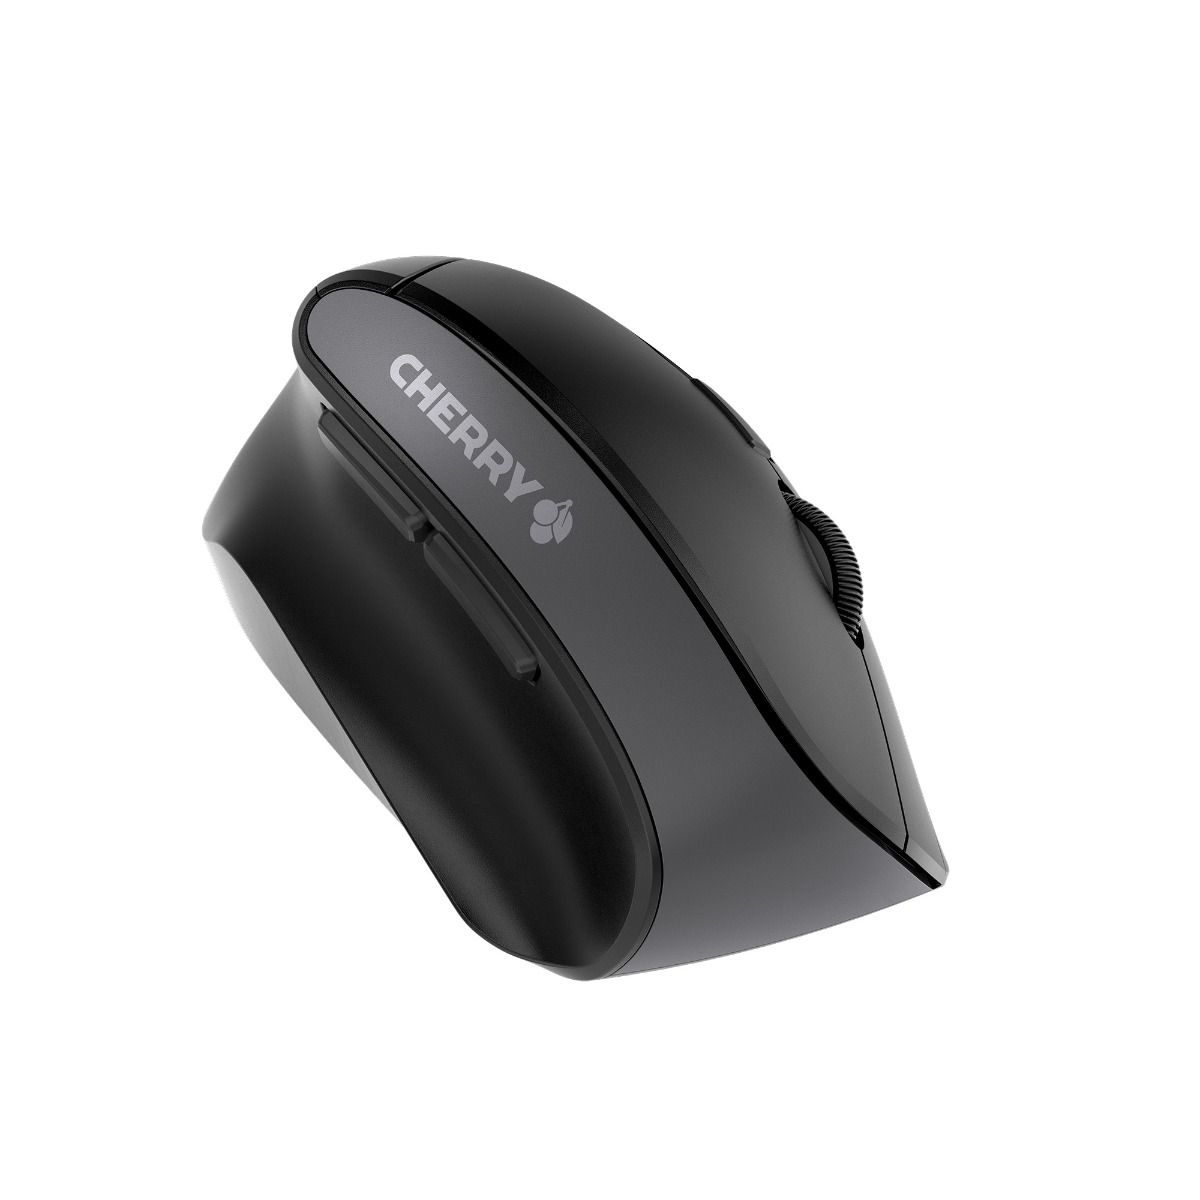 Cherry MW 4500 LEFT - Maus - ergonomisch - Für Linkshänder - optisch - 6 Tasten - kabellos - kabelloser Empfänger (USB)